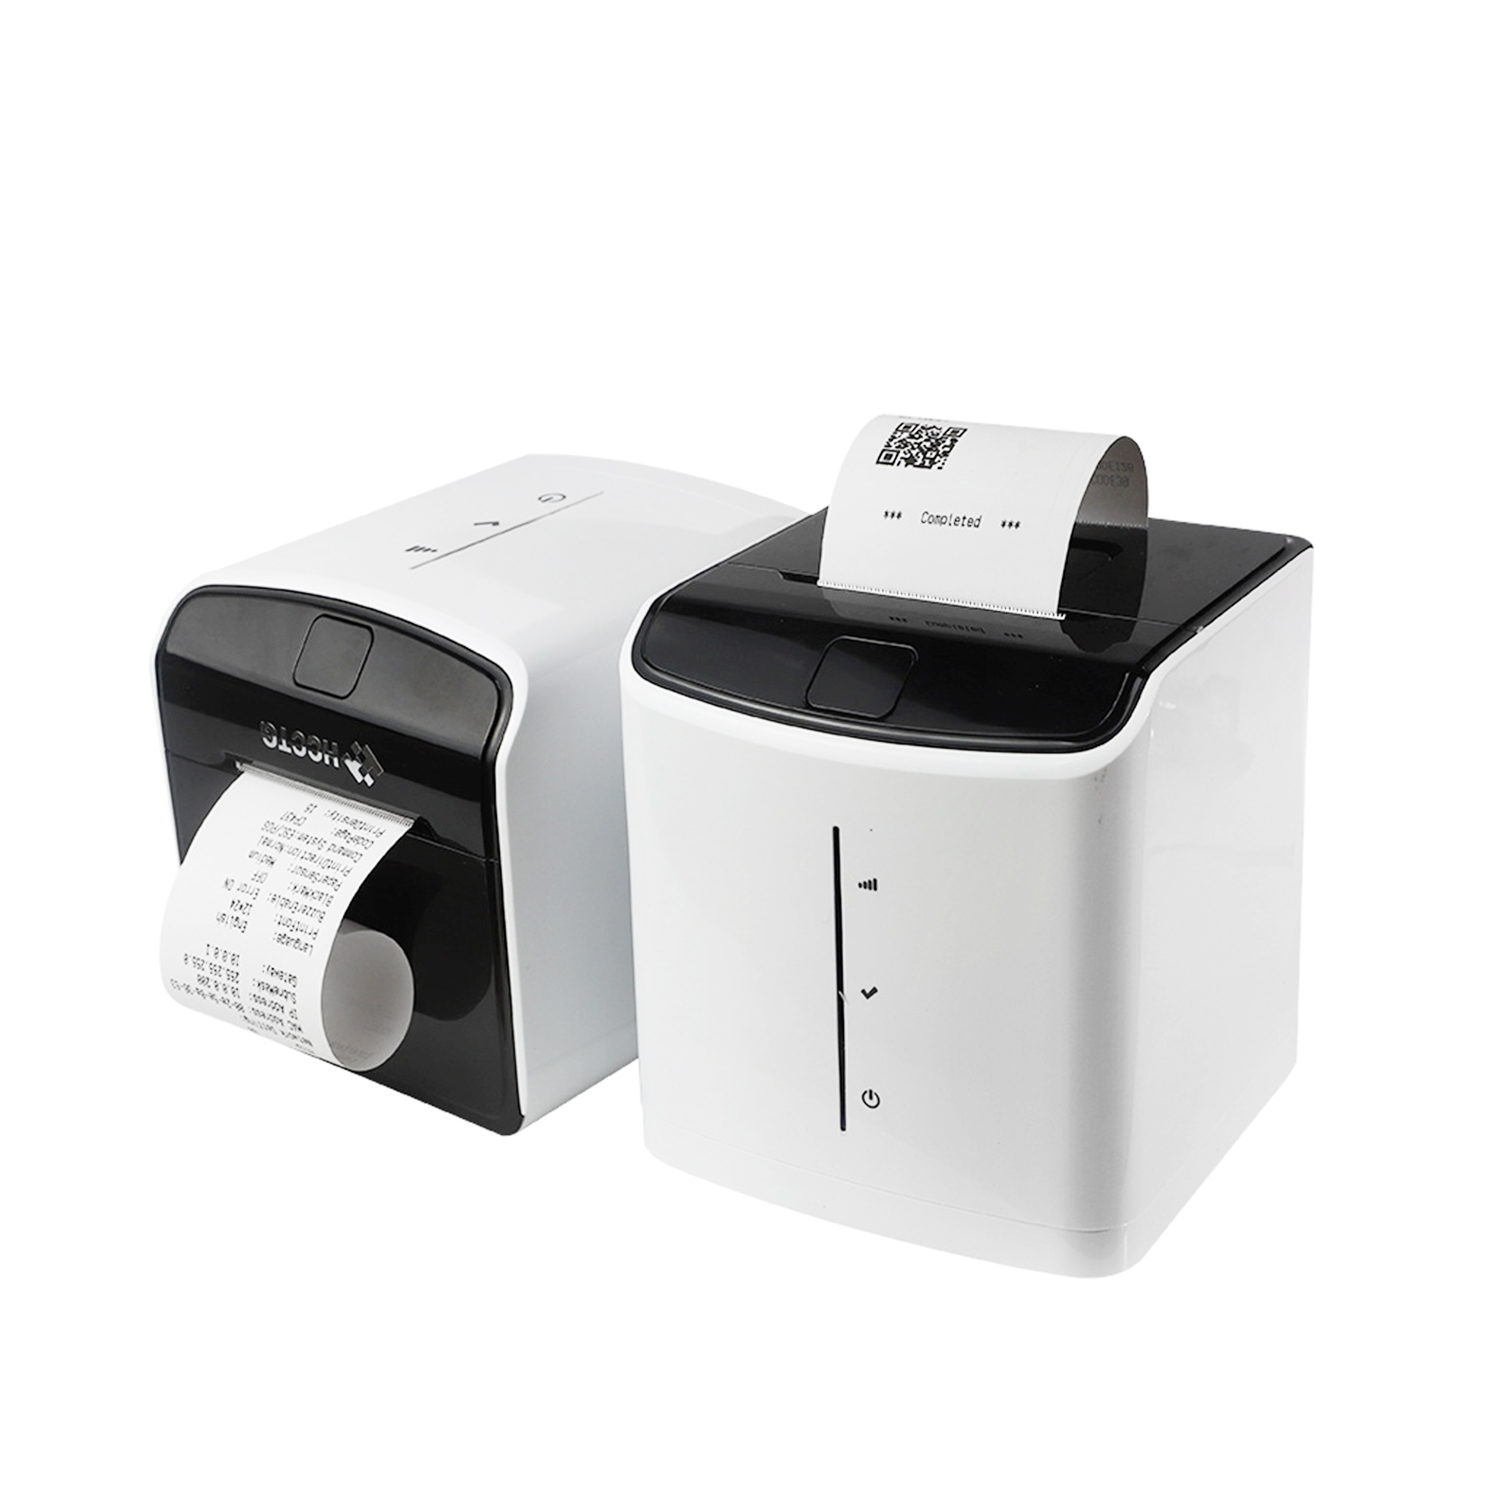 Barcodeprinter voor drukmachine voor medische winkels;
